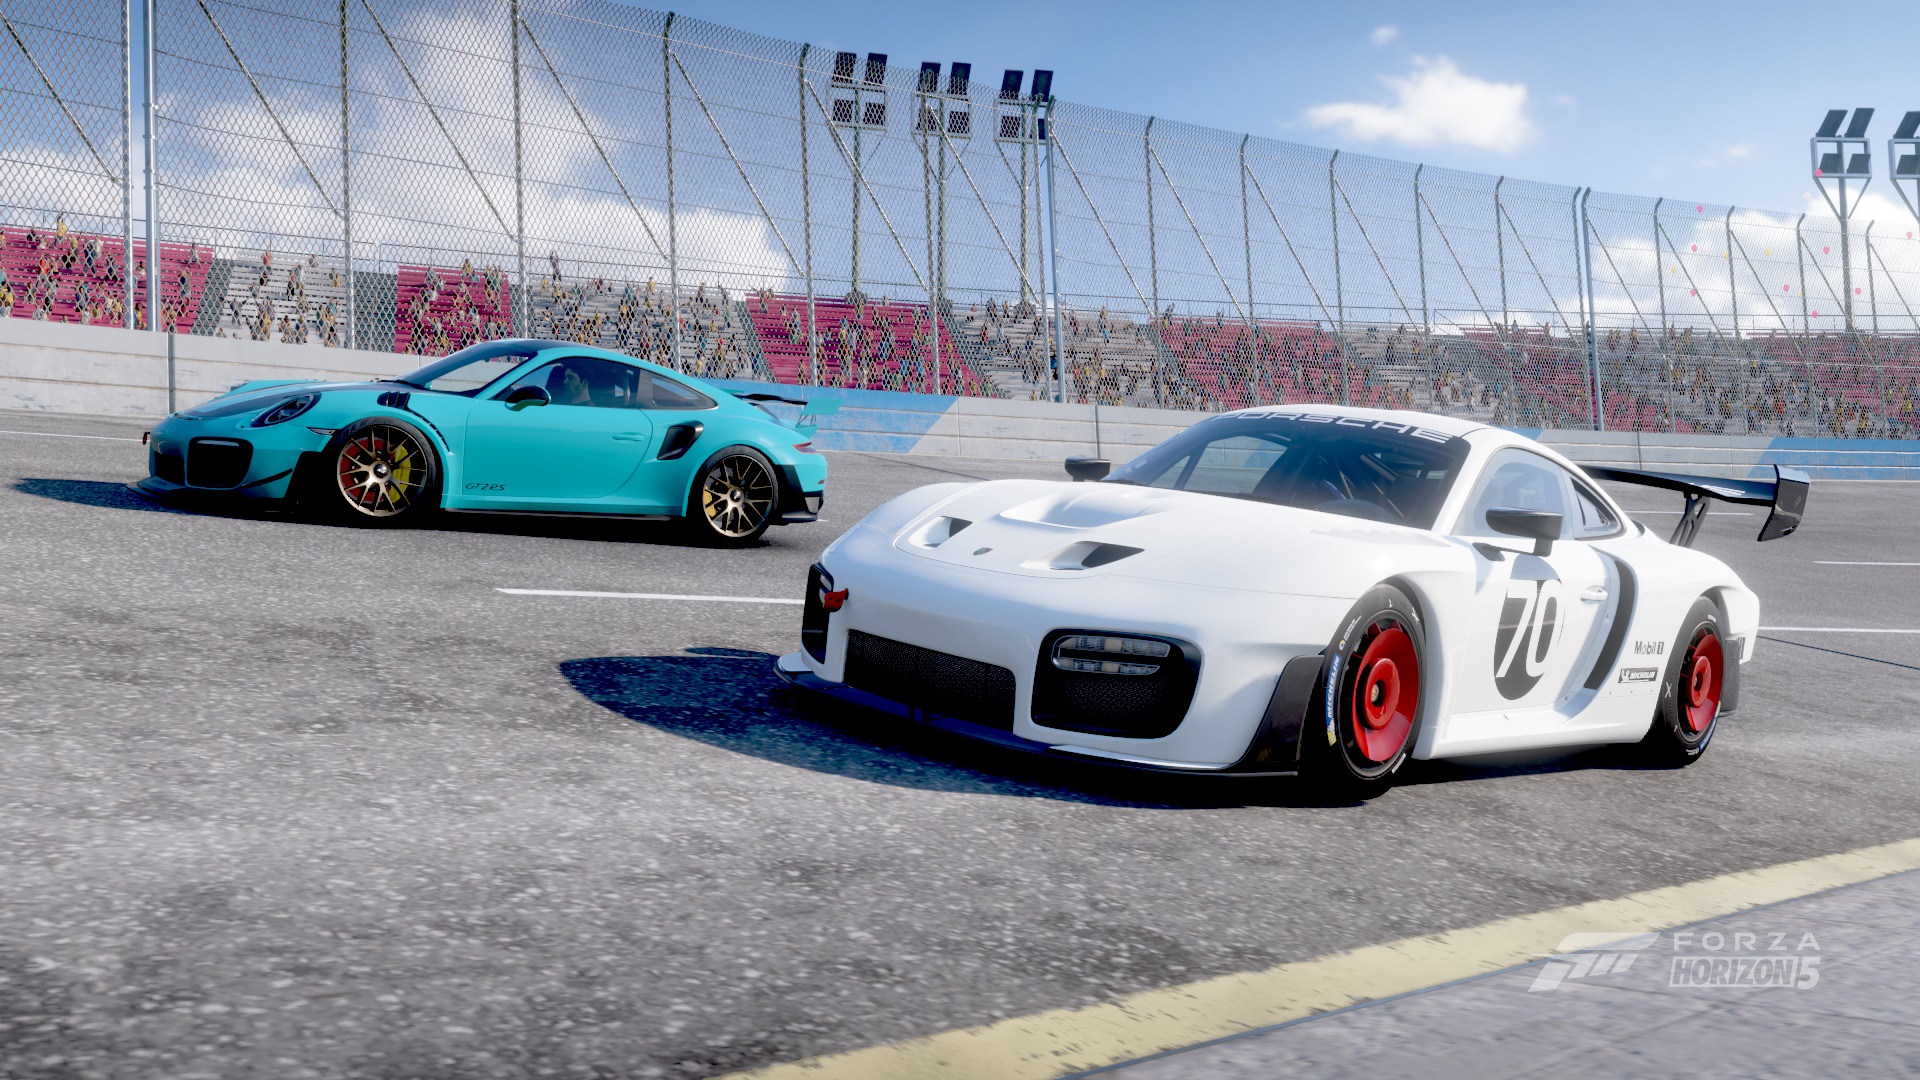 Forza Horizon 5 “High Performance” Preview: Huracan STO, Porsche